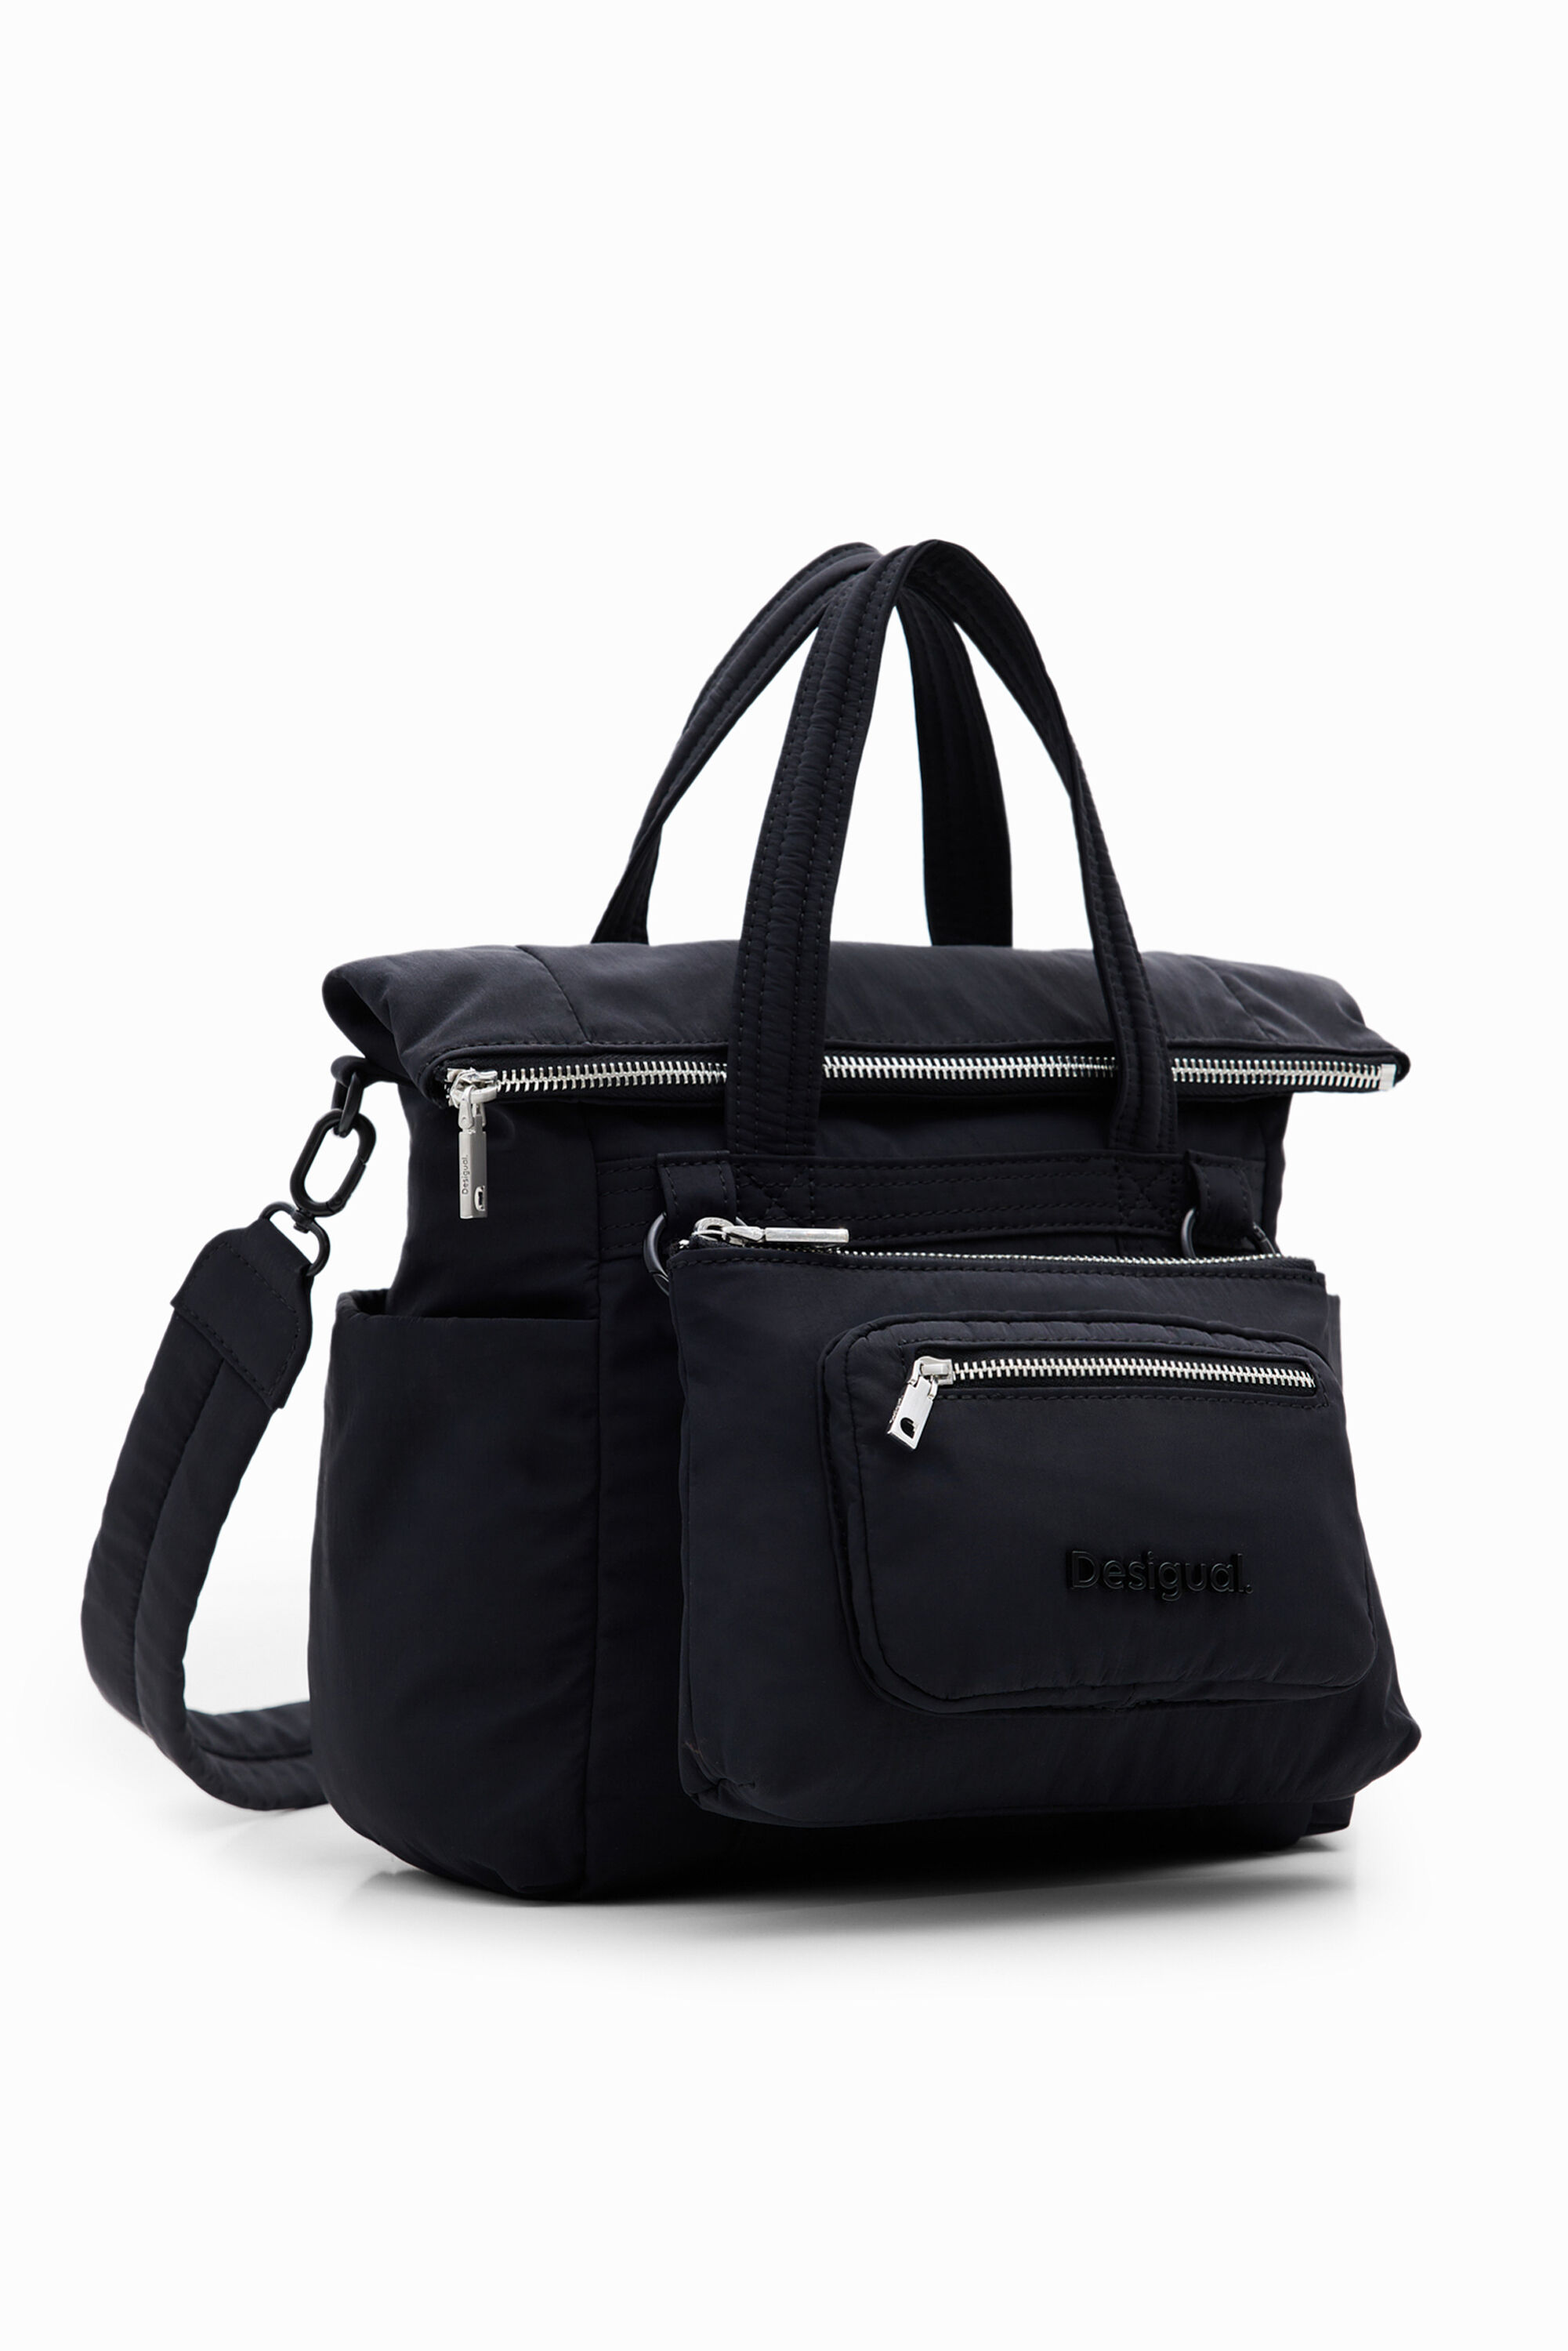 XS multi-position voyager bag - BLACK - U